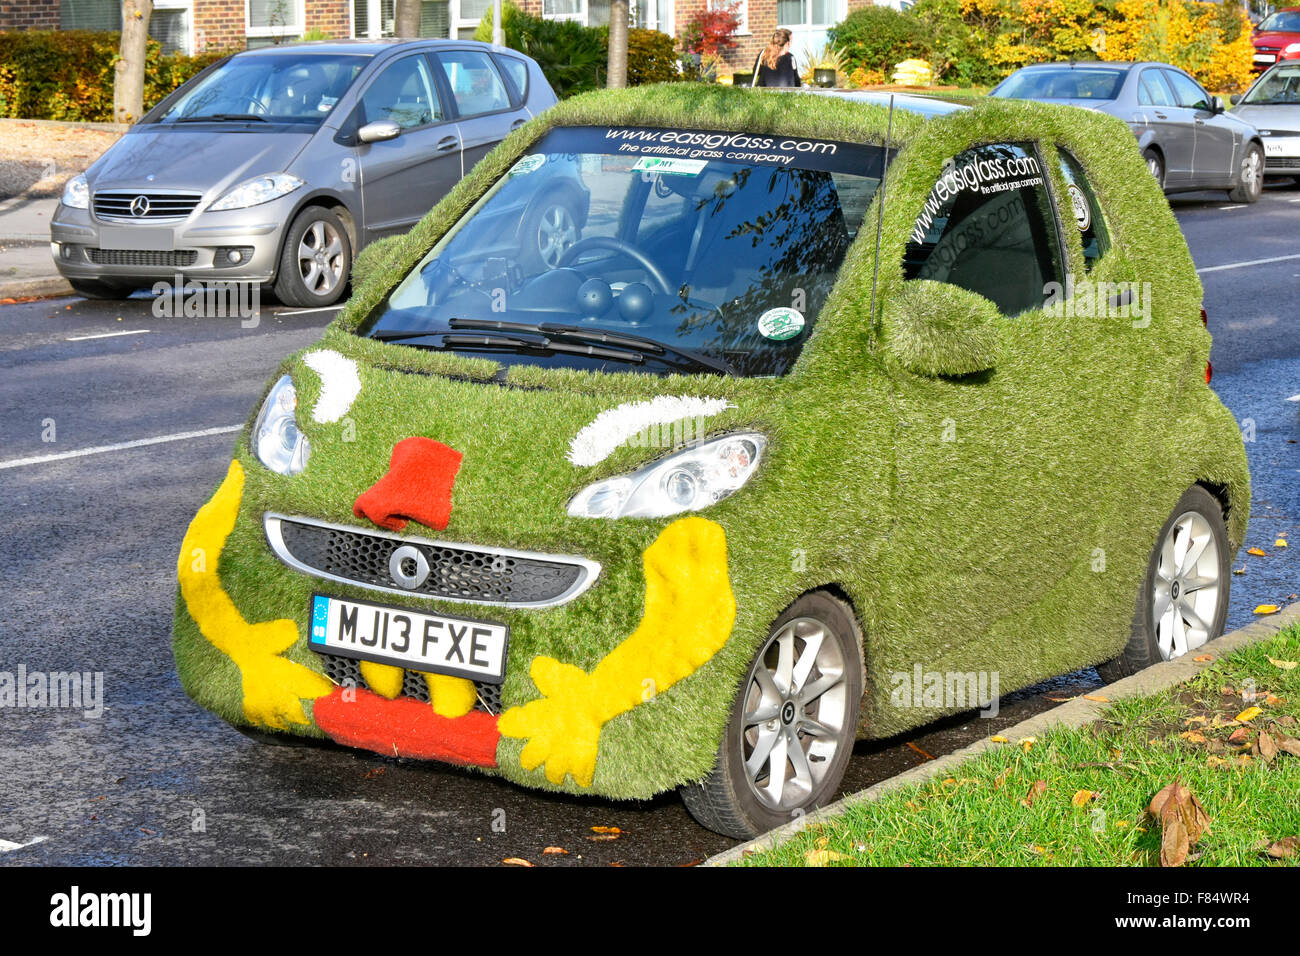 Smart Auto abgedeckt in der gefälschten Rasen Rasen Unusuak mobile Werbung für Kunstrasen Material für Gärten Essex England UK Stockfoto